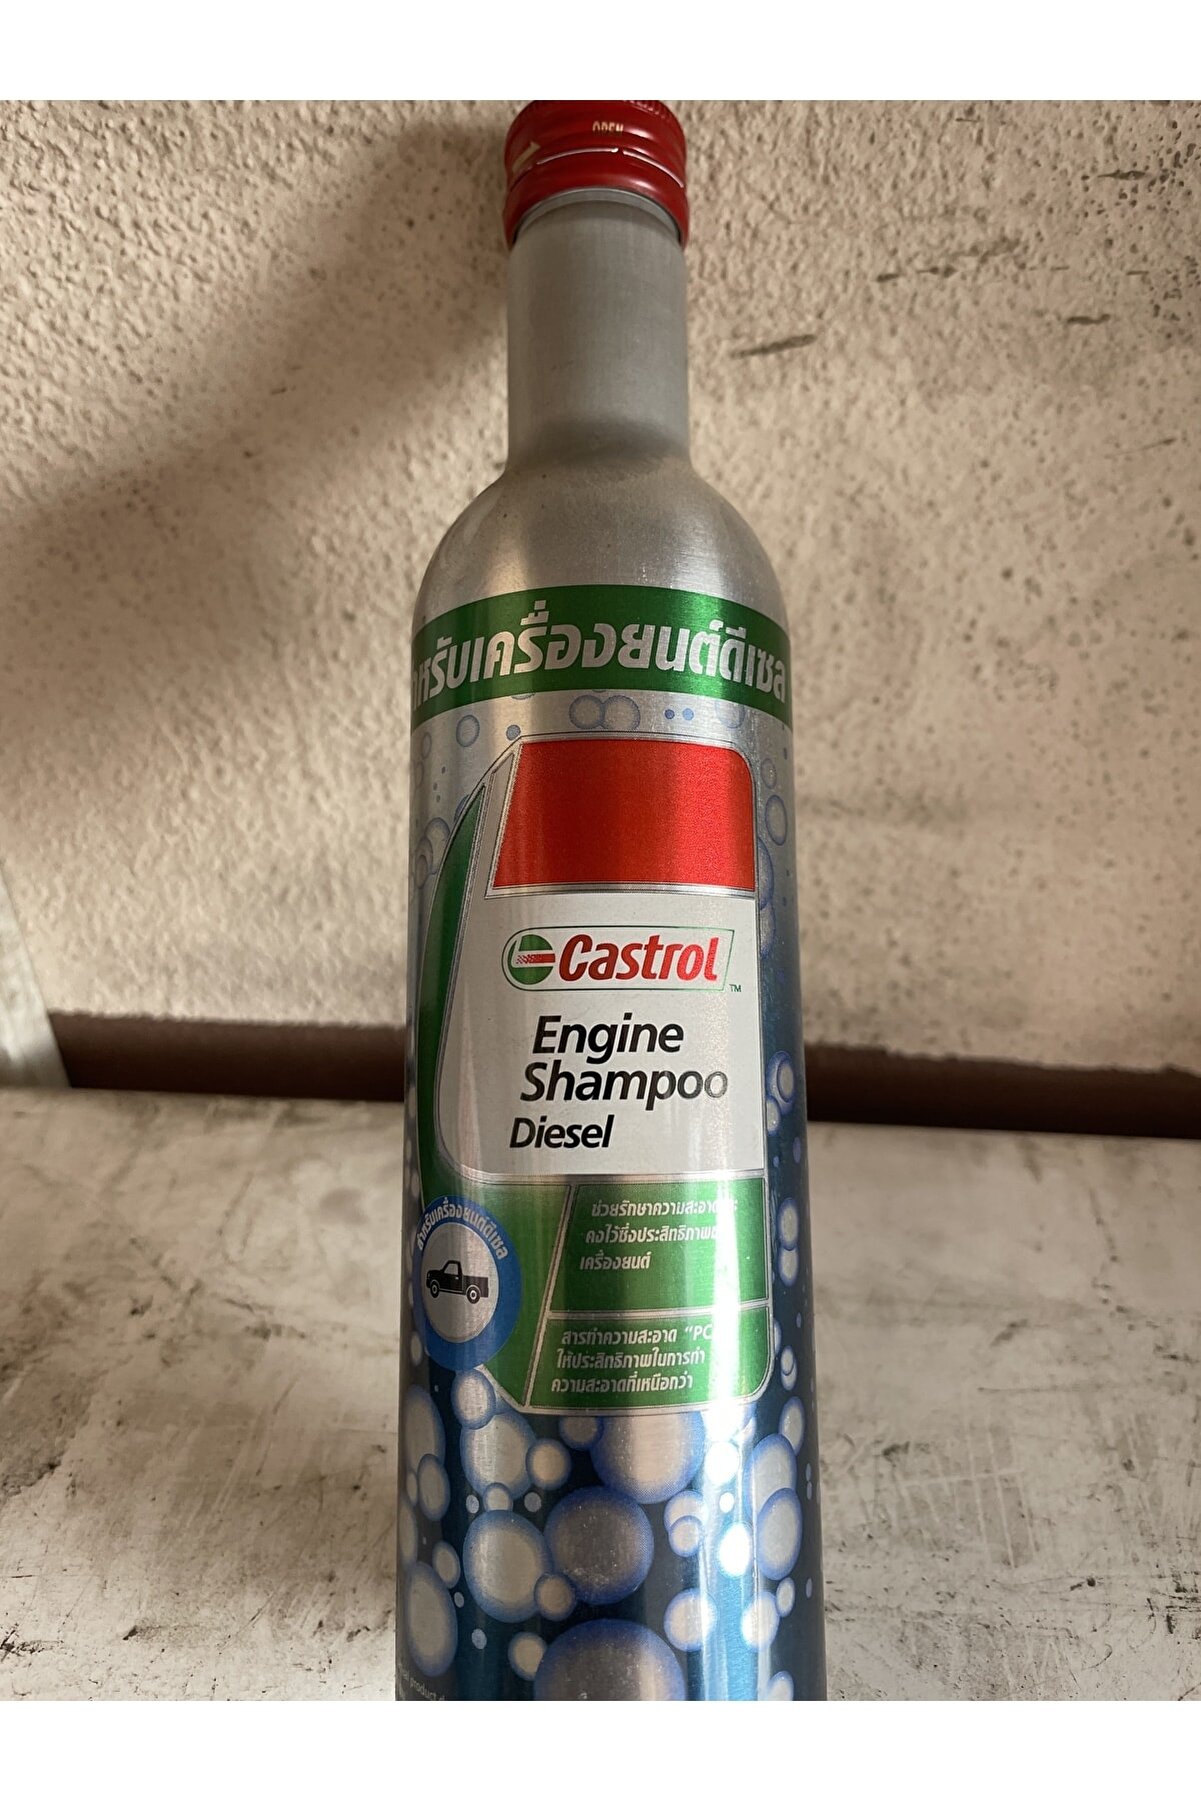 Castrol Engine Shampoo Diesel 300 ml Şok Fiyat